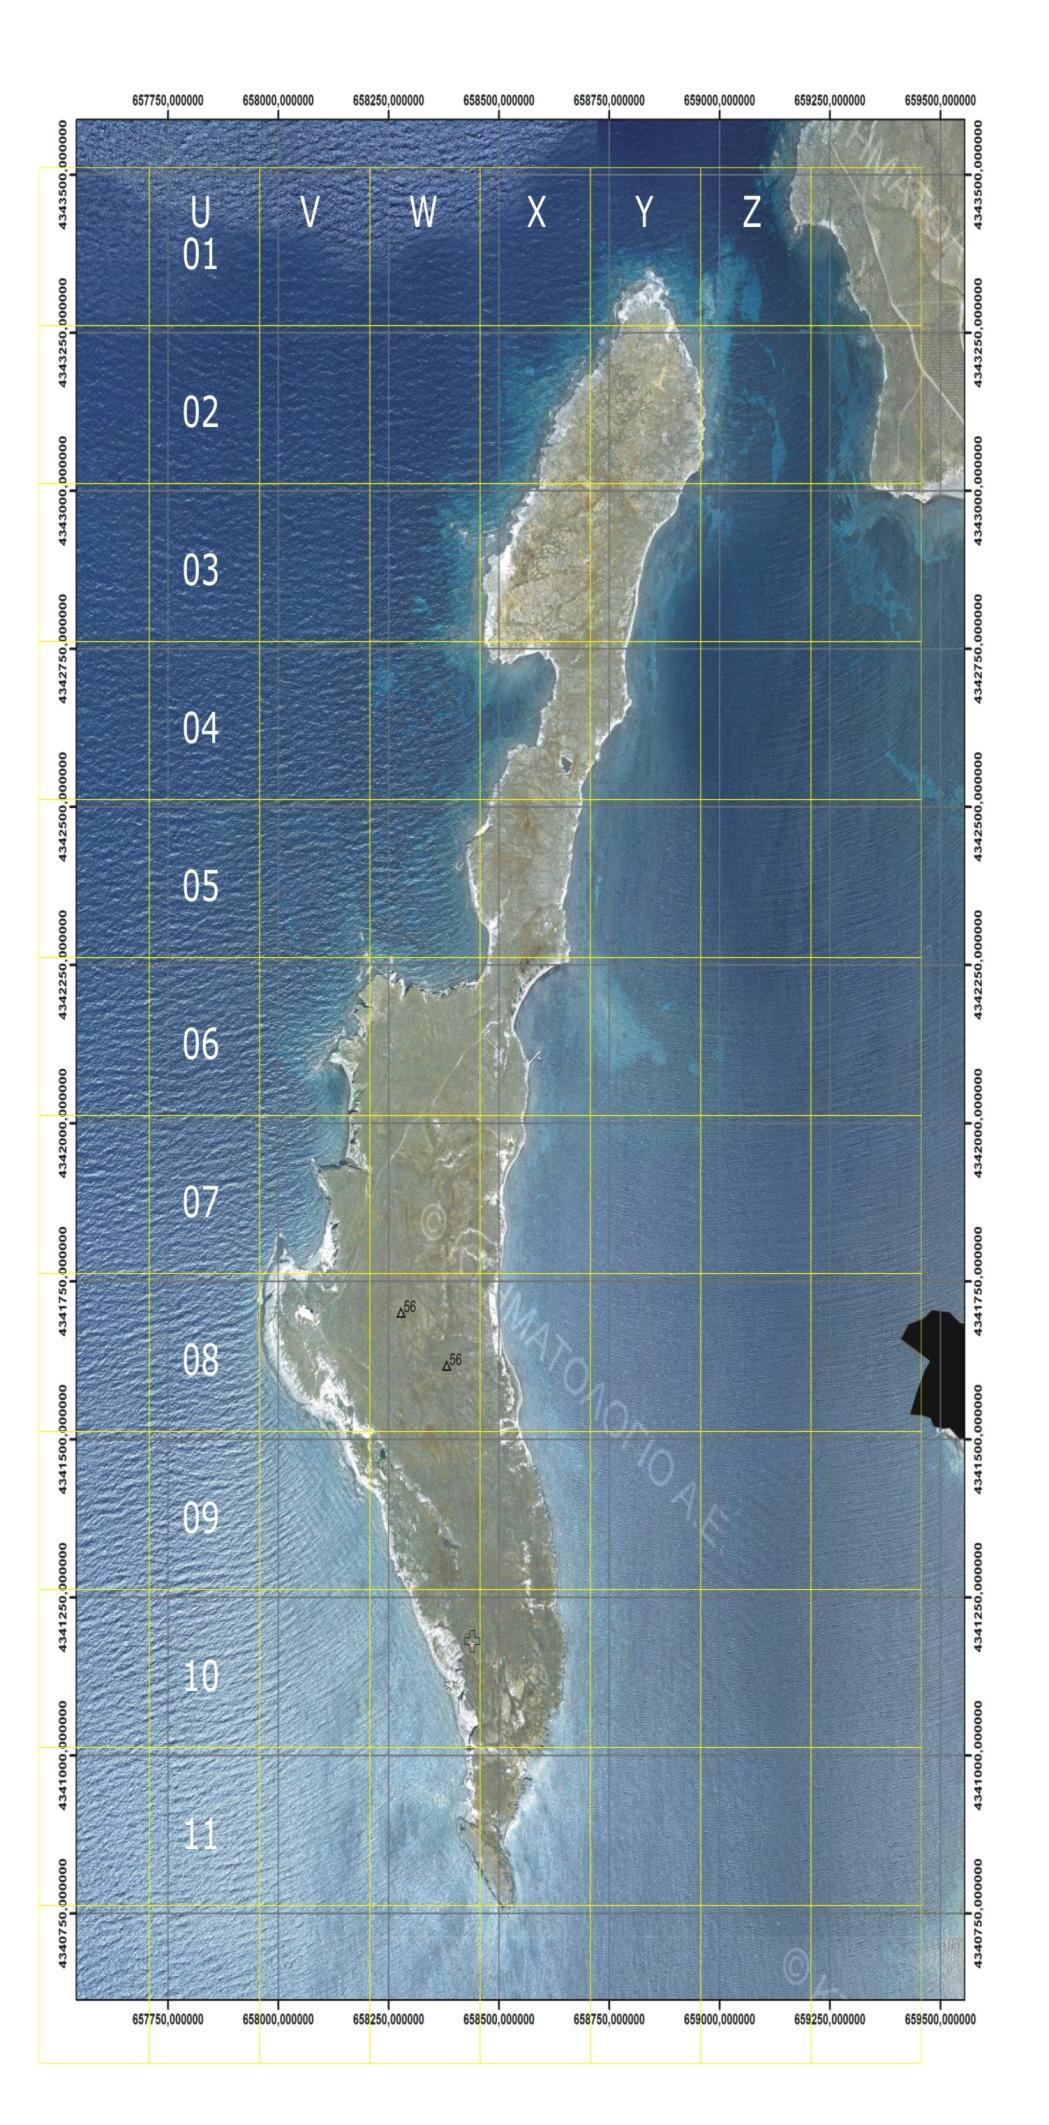 Εικόνα 1: Χάρτης της νησίδας